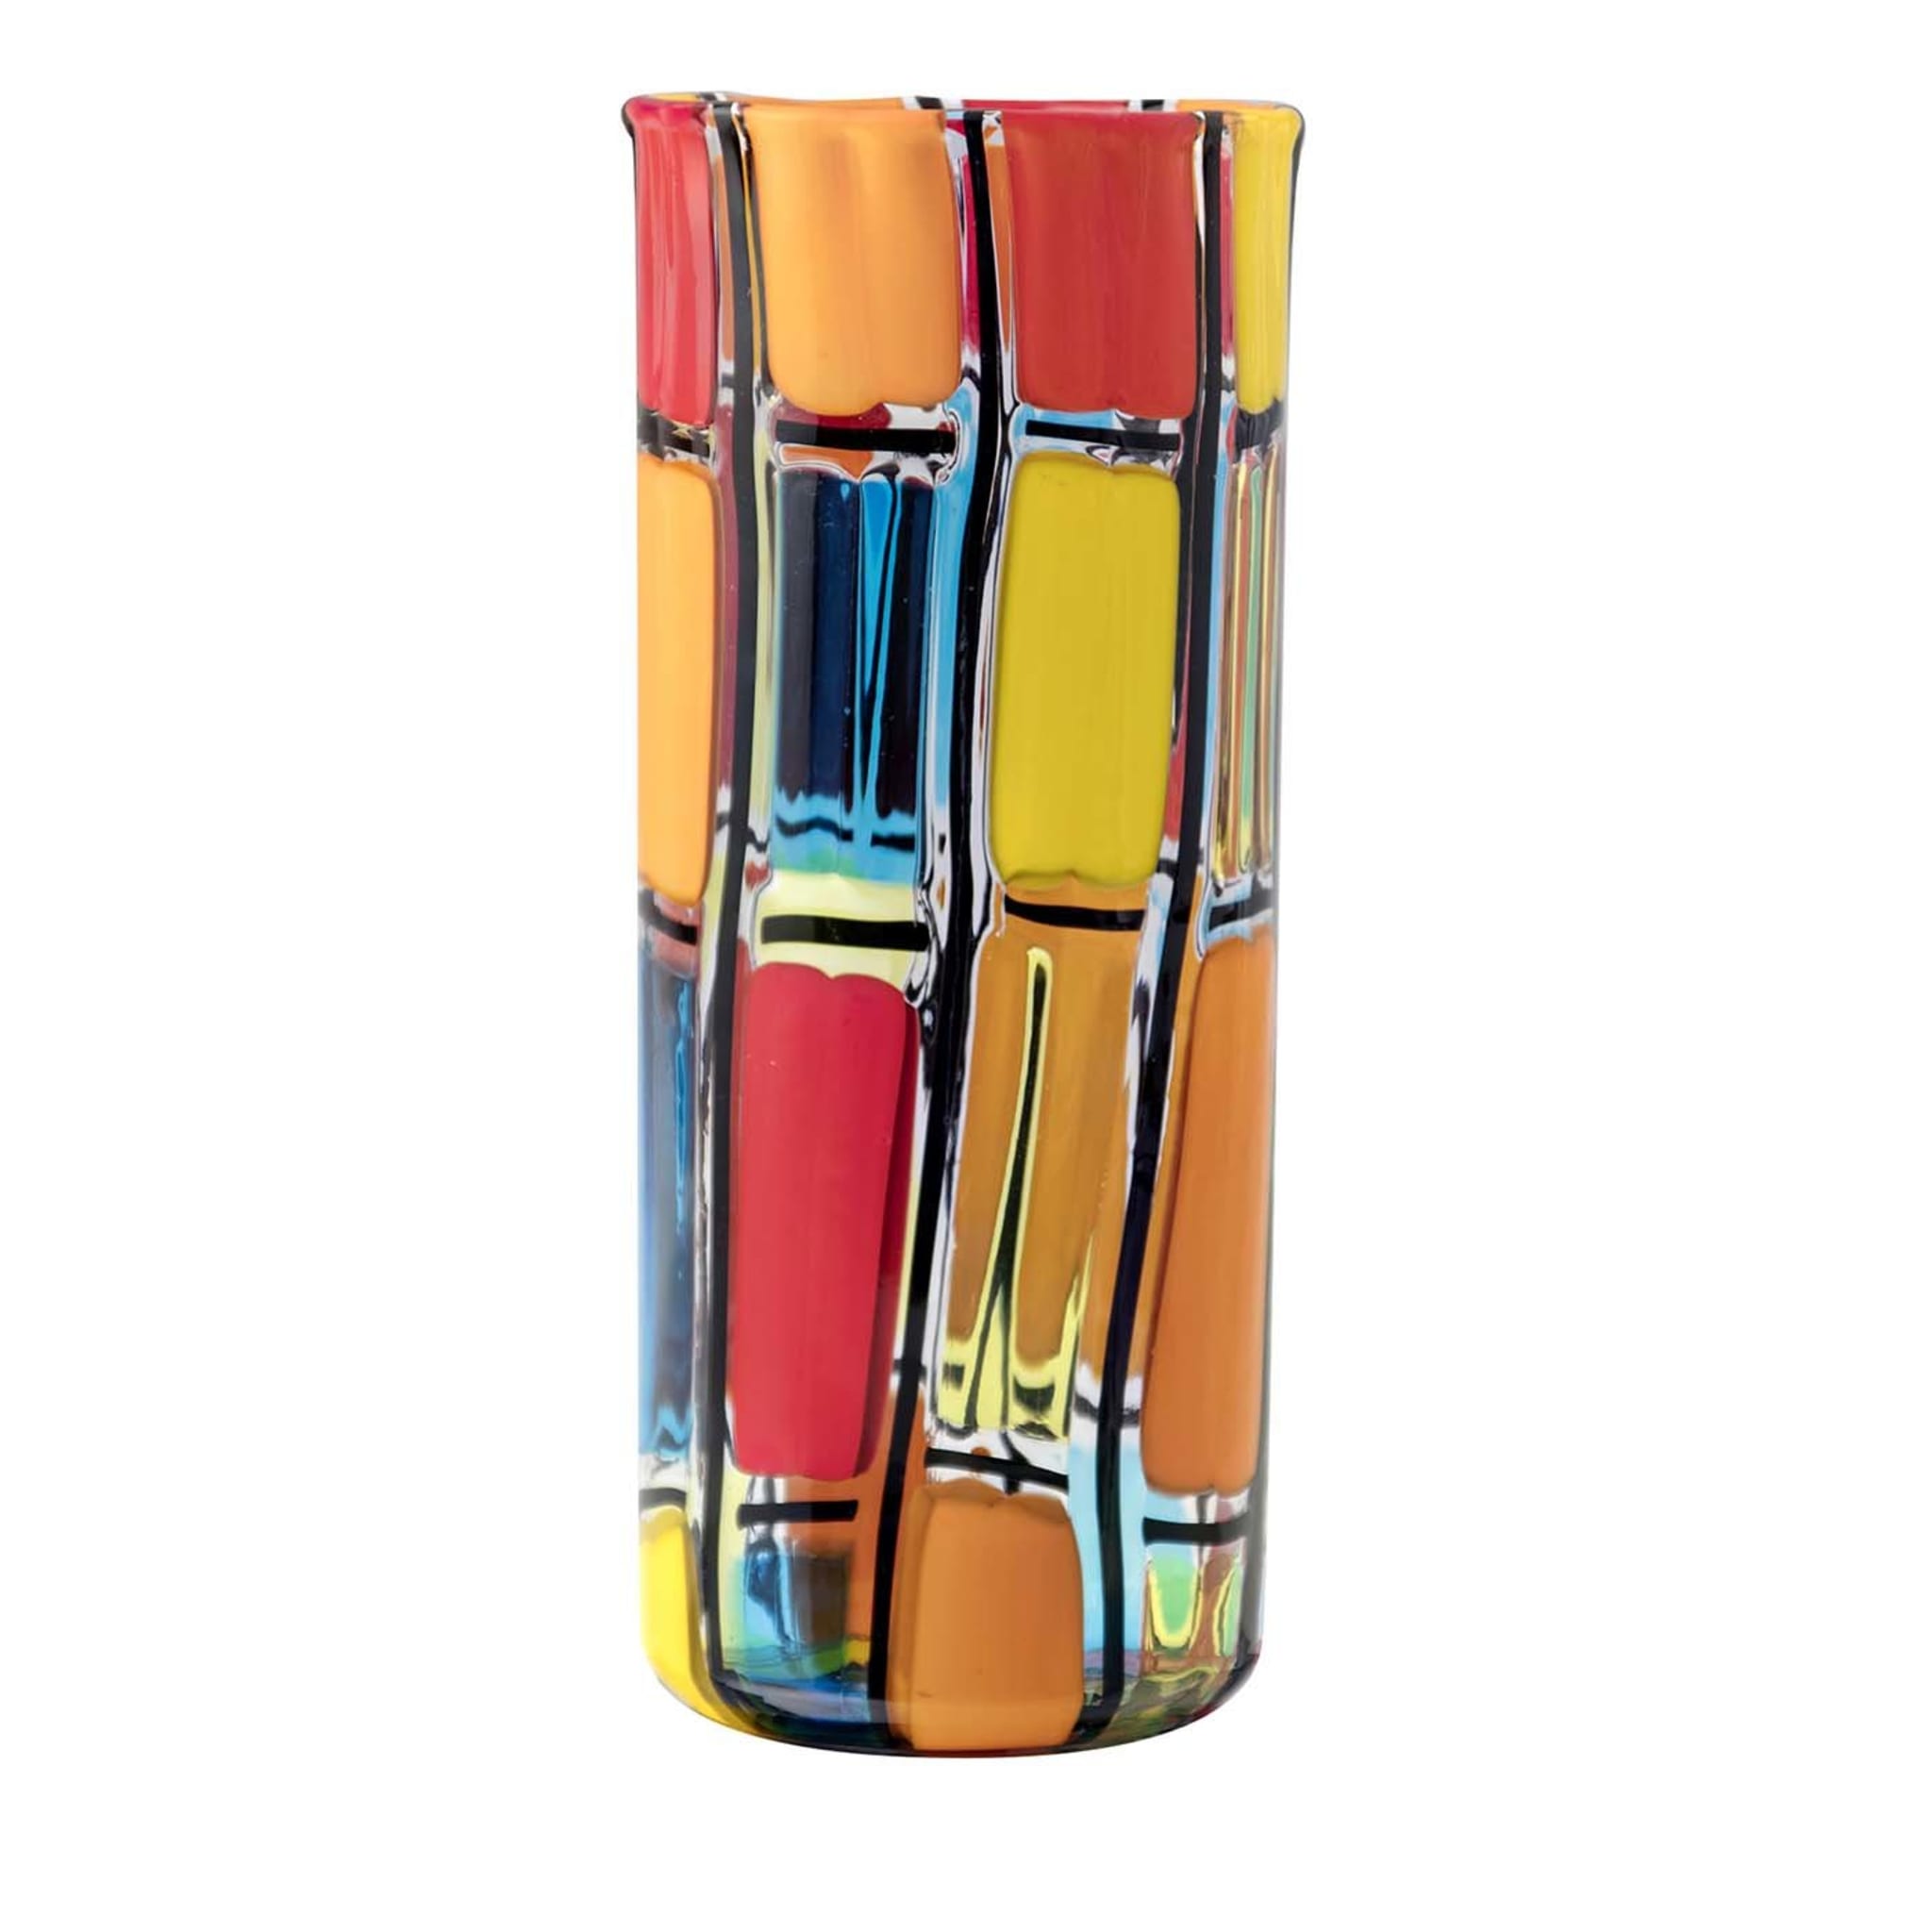 Zylindrische Quadri-Vase von Angelo Ballarin - Hauptansicht